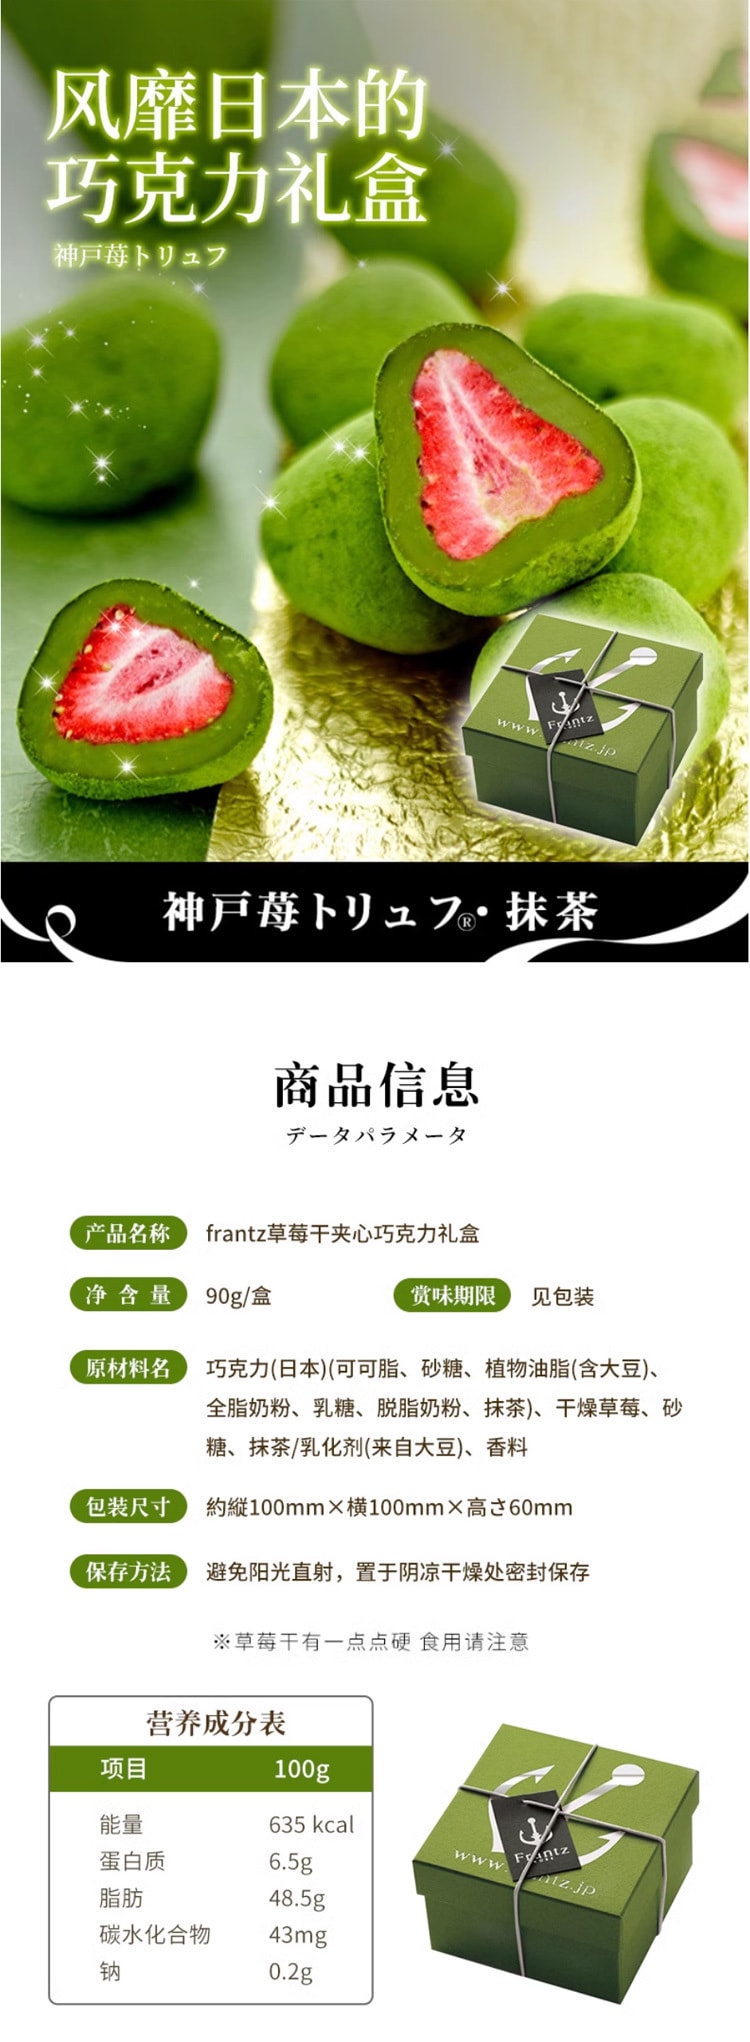 【日本直效郵件】神戶FRANTZ 草莓夾心松露抹茶巧克力 90g